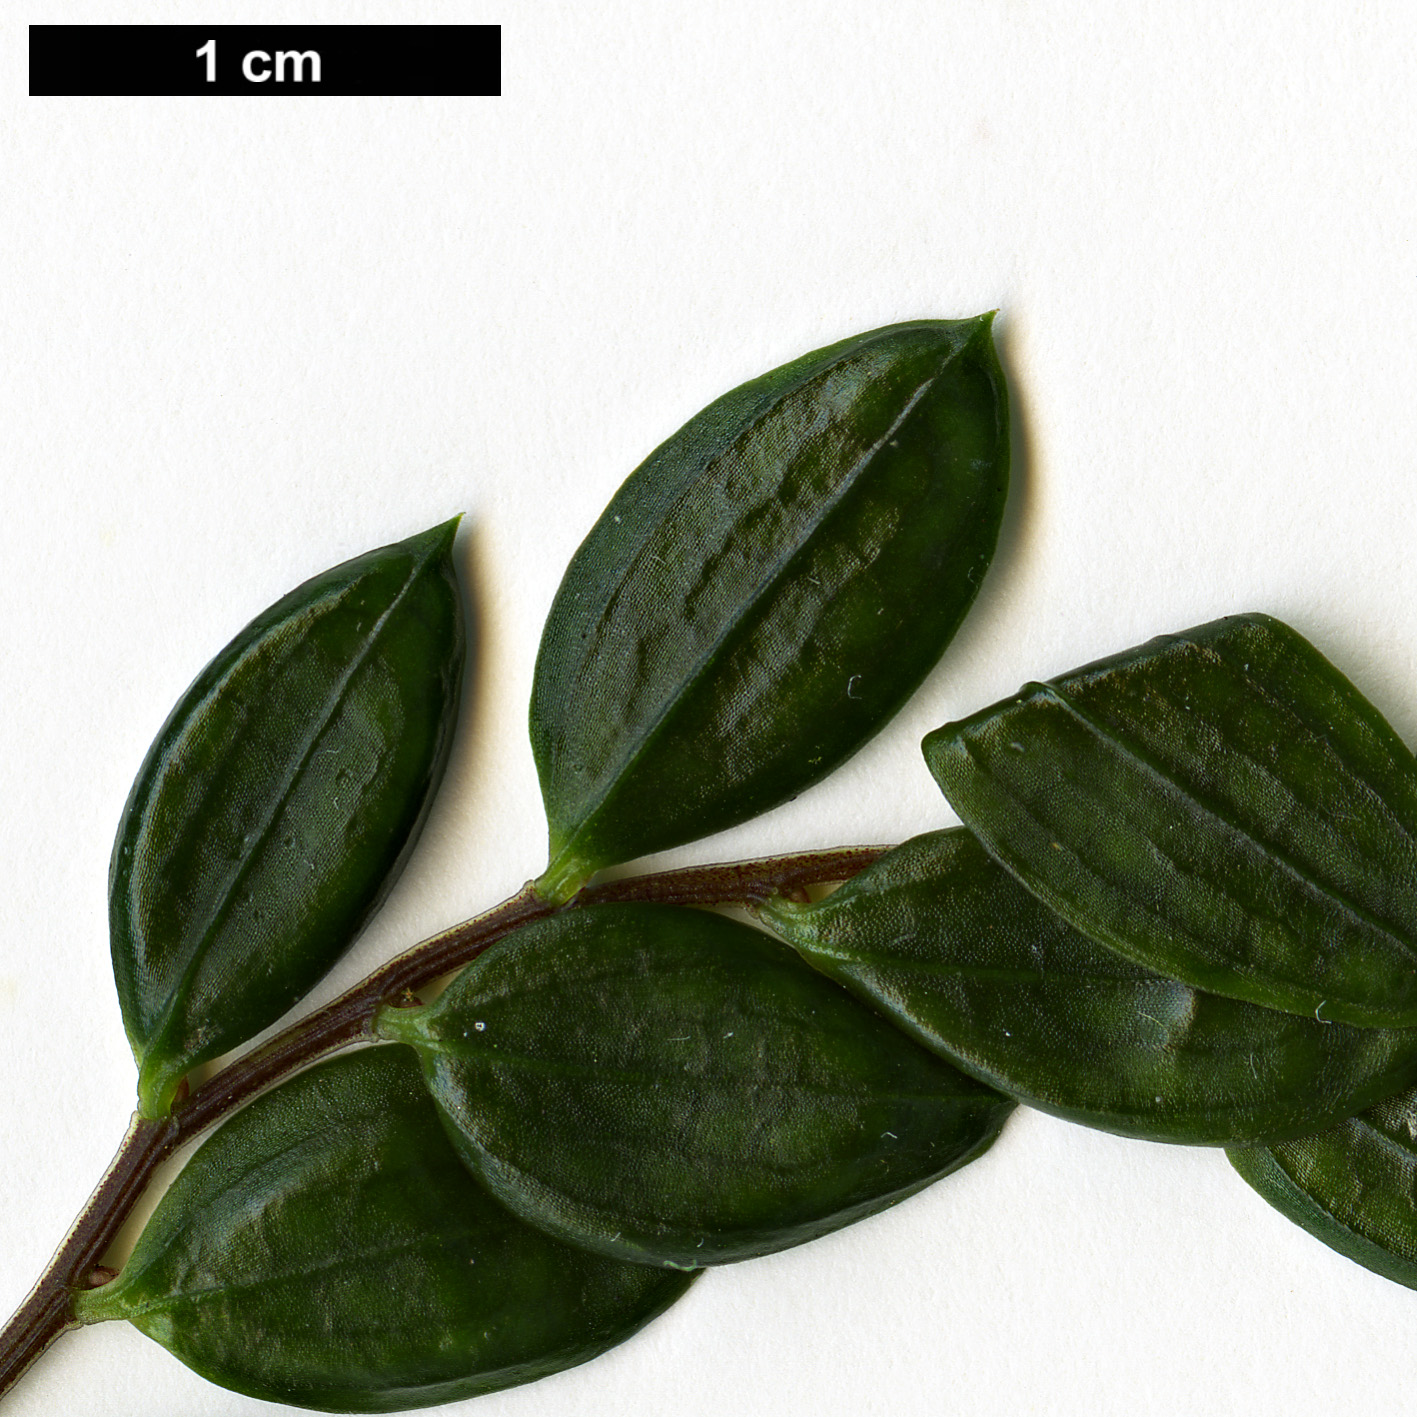 High resolution image: Family: Alstroemeriaceae - Genus: Luzuriaga - Taxon: polyphylla